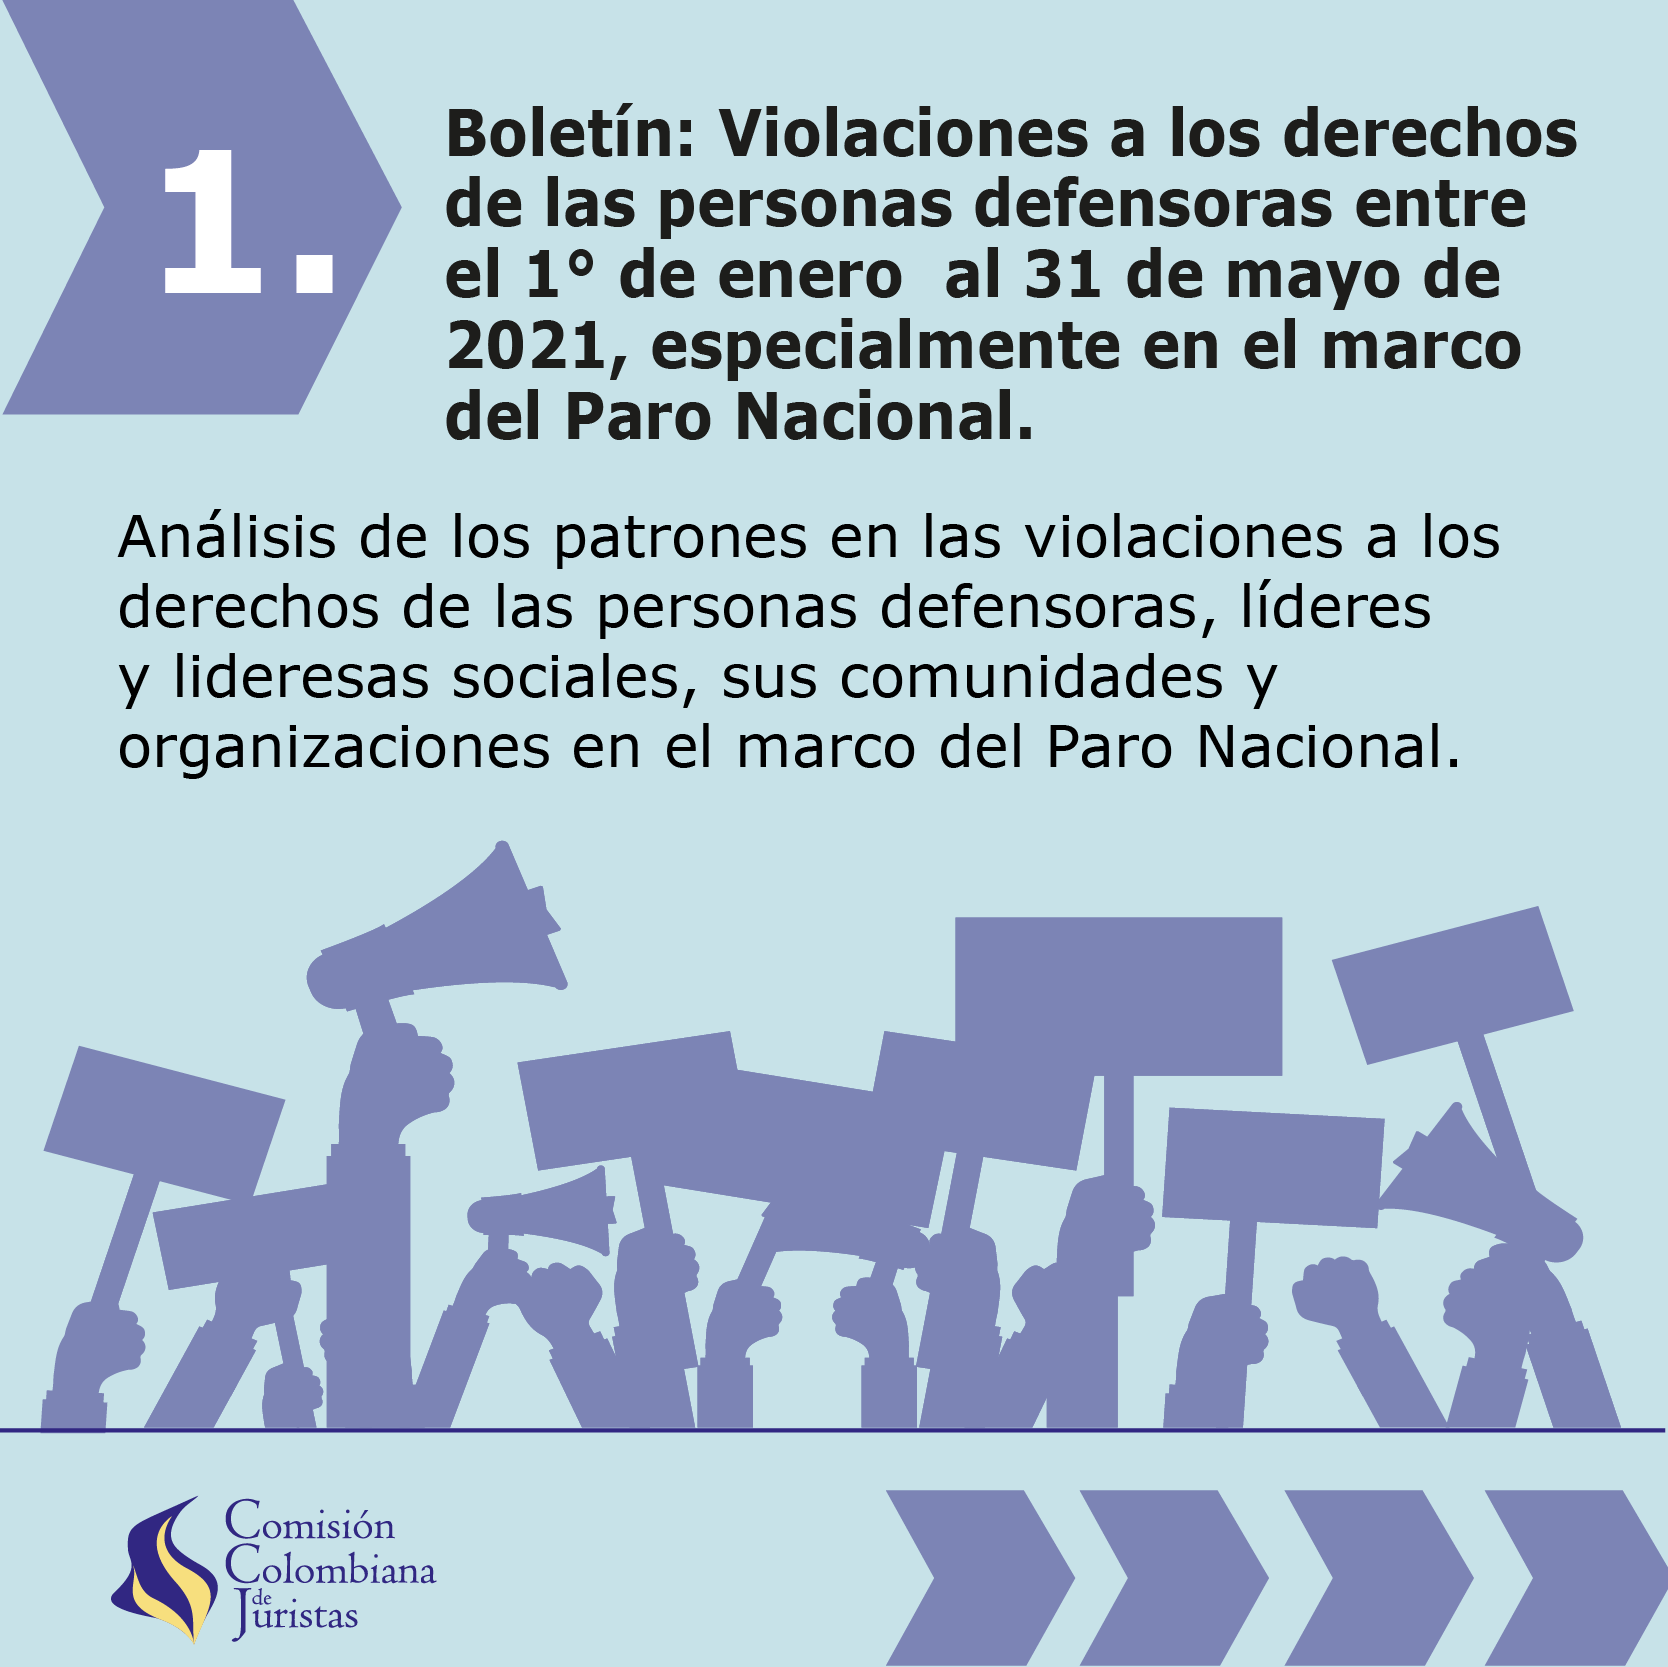 Imagen 1 de Boletín: Violaciones a los derechos de las personas defensoras entre el 1 de enero y el 31 de mayo, especialmente en el marco del paro nacional